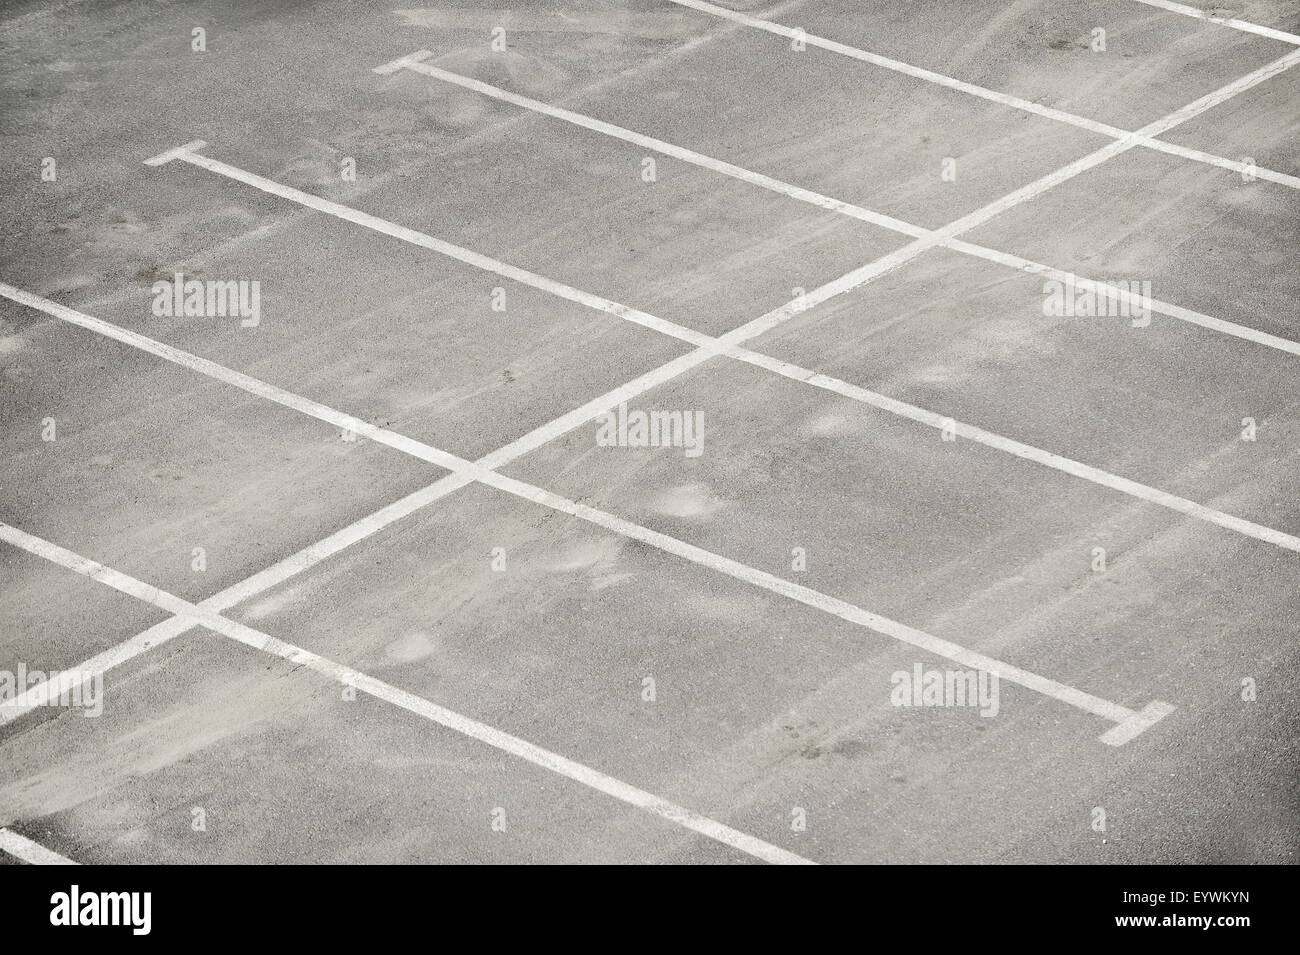 Vue aérienne avec parking vide Banque D'Images